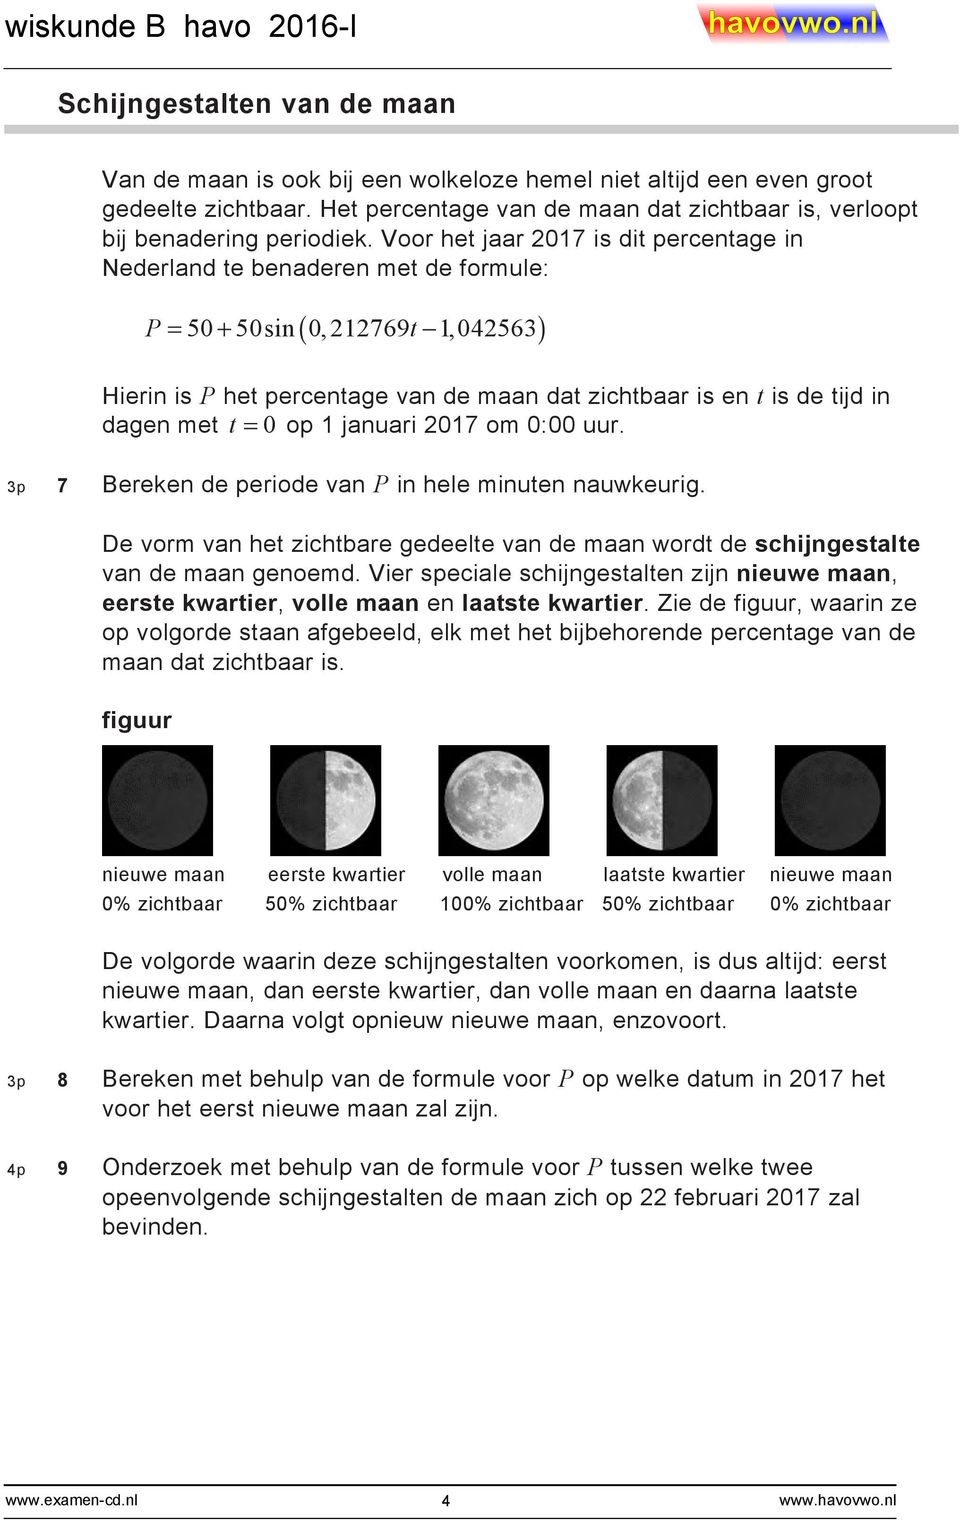 met t = 0 op 1 januari 2017 om 0:00 uur. 3p 7 Bereken de periode van P in hele minuten nauwkeurig. De vorm van het zichtbare gedeelte van de maan wordt de schijngestalte van de maan genoemd.